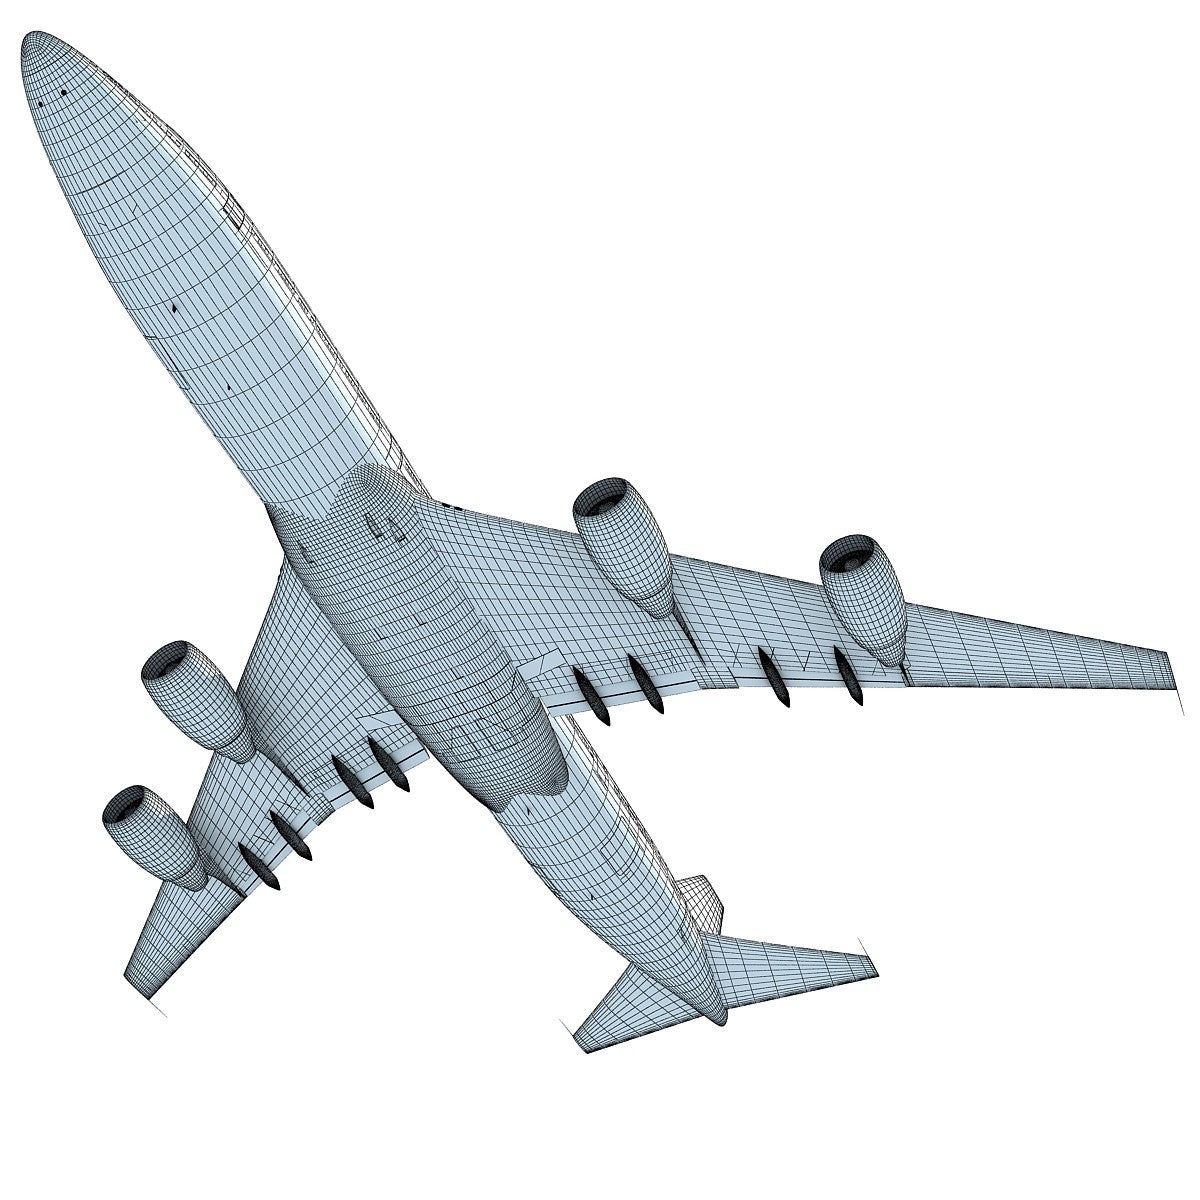 Boeing 3D Scene